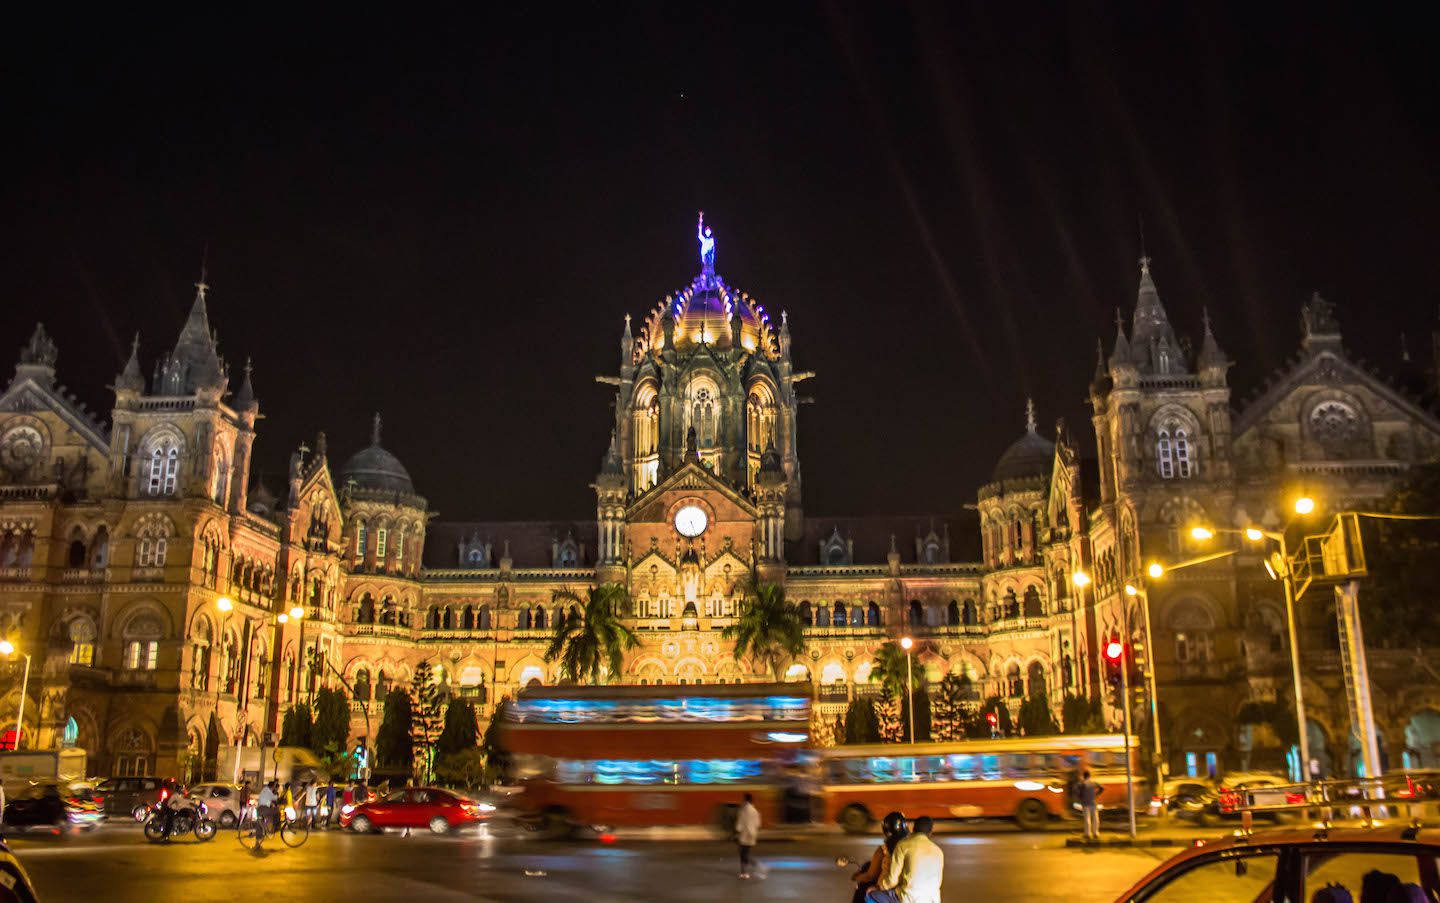 Victoria Terminus in Mumbai, India